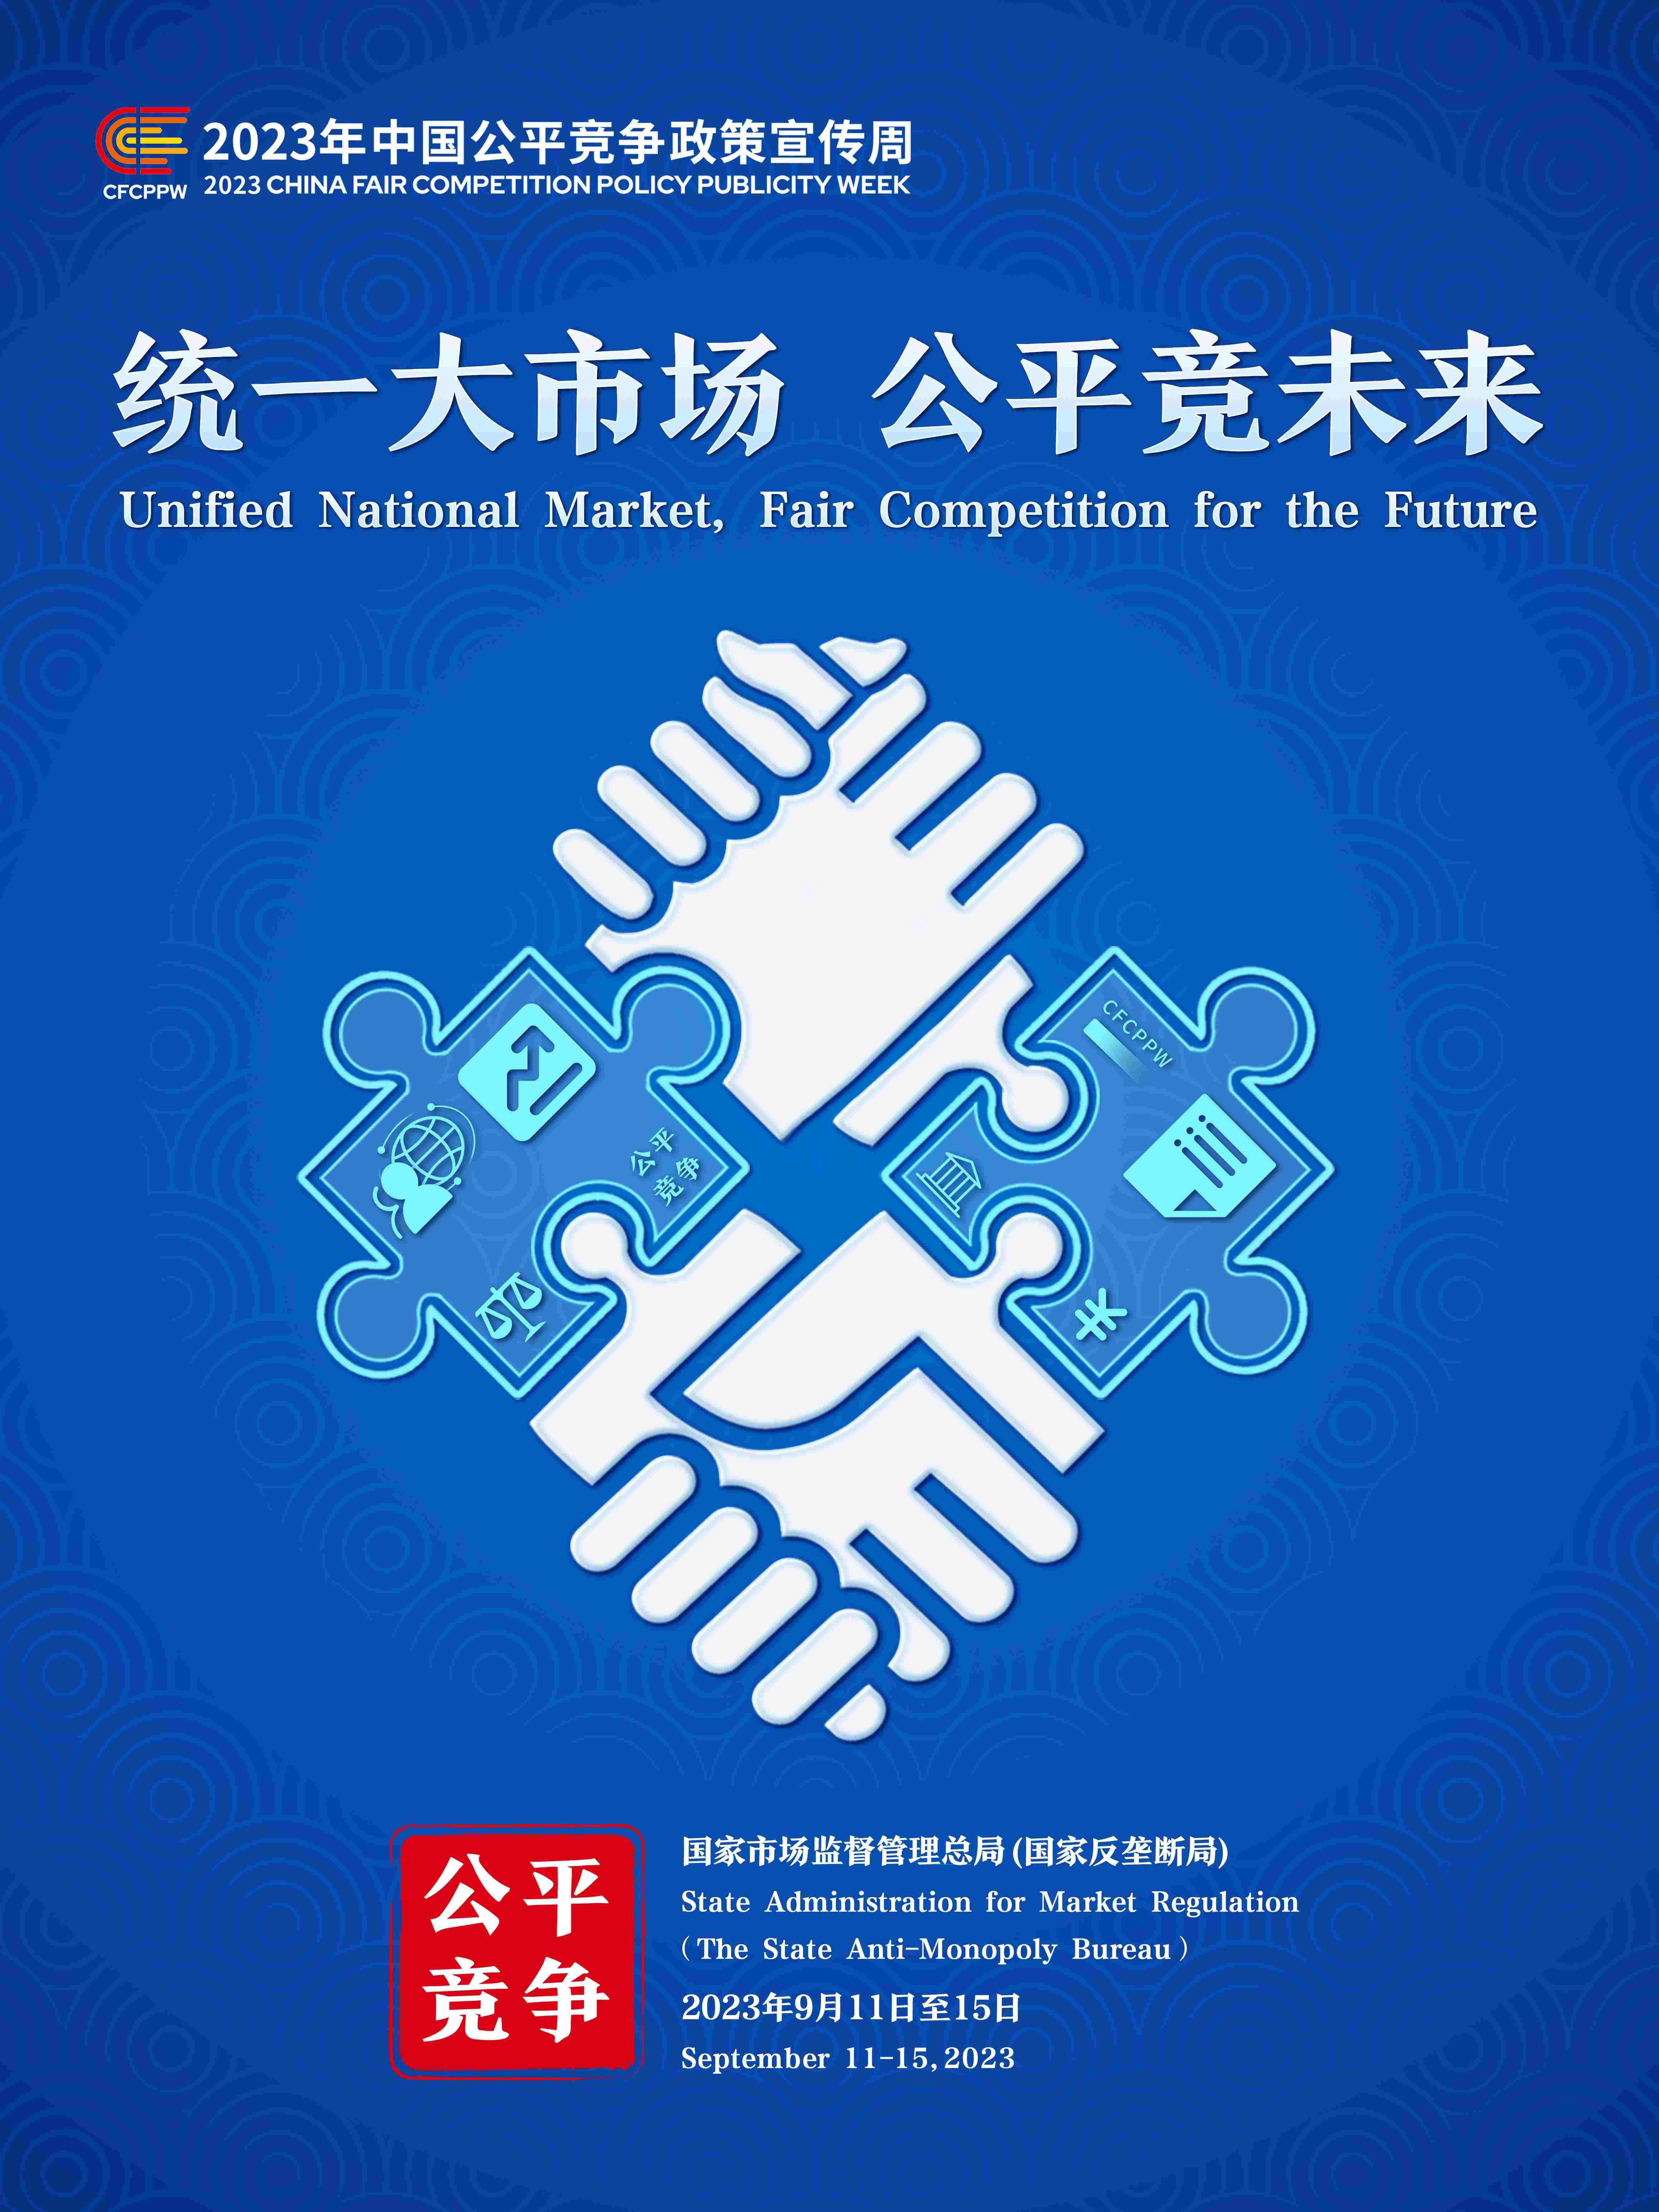 2023年中国公平竞争政策宣传周主题海报-压缩